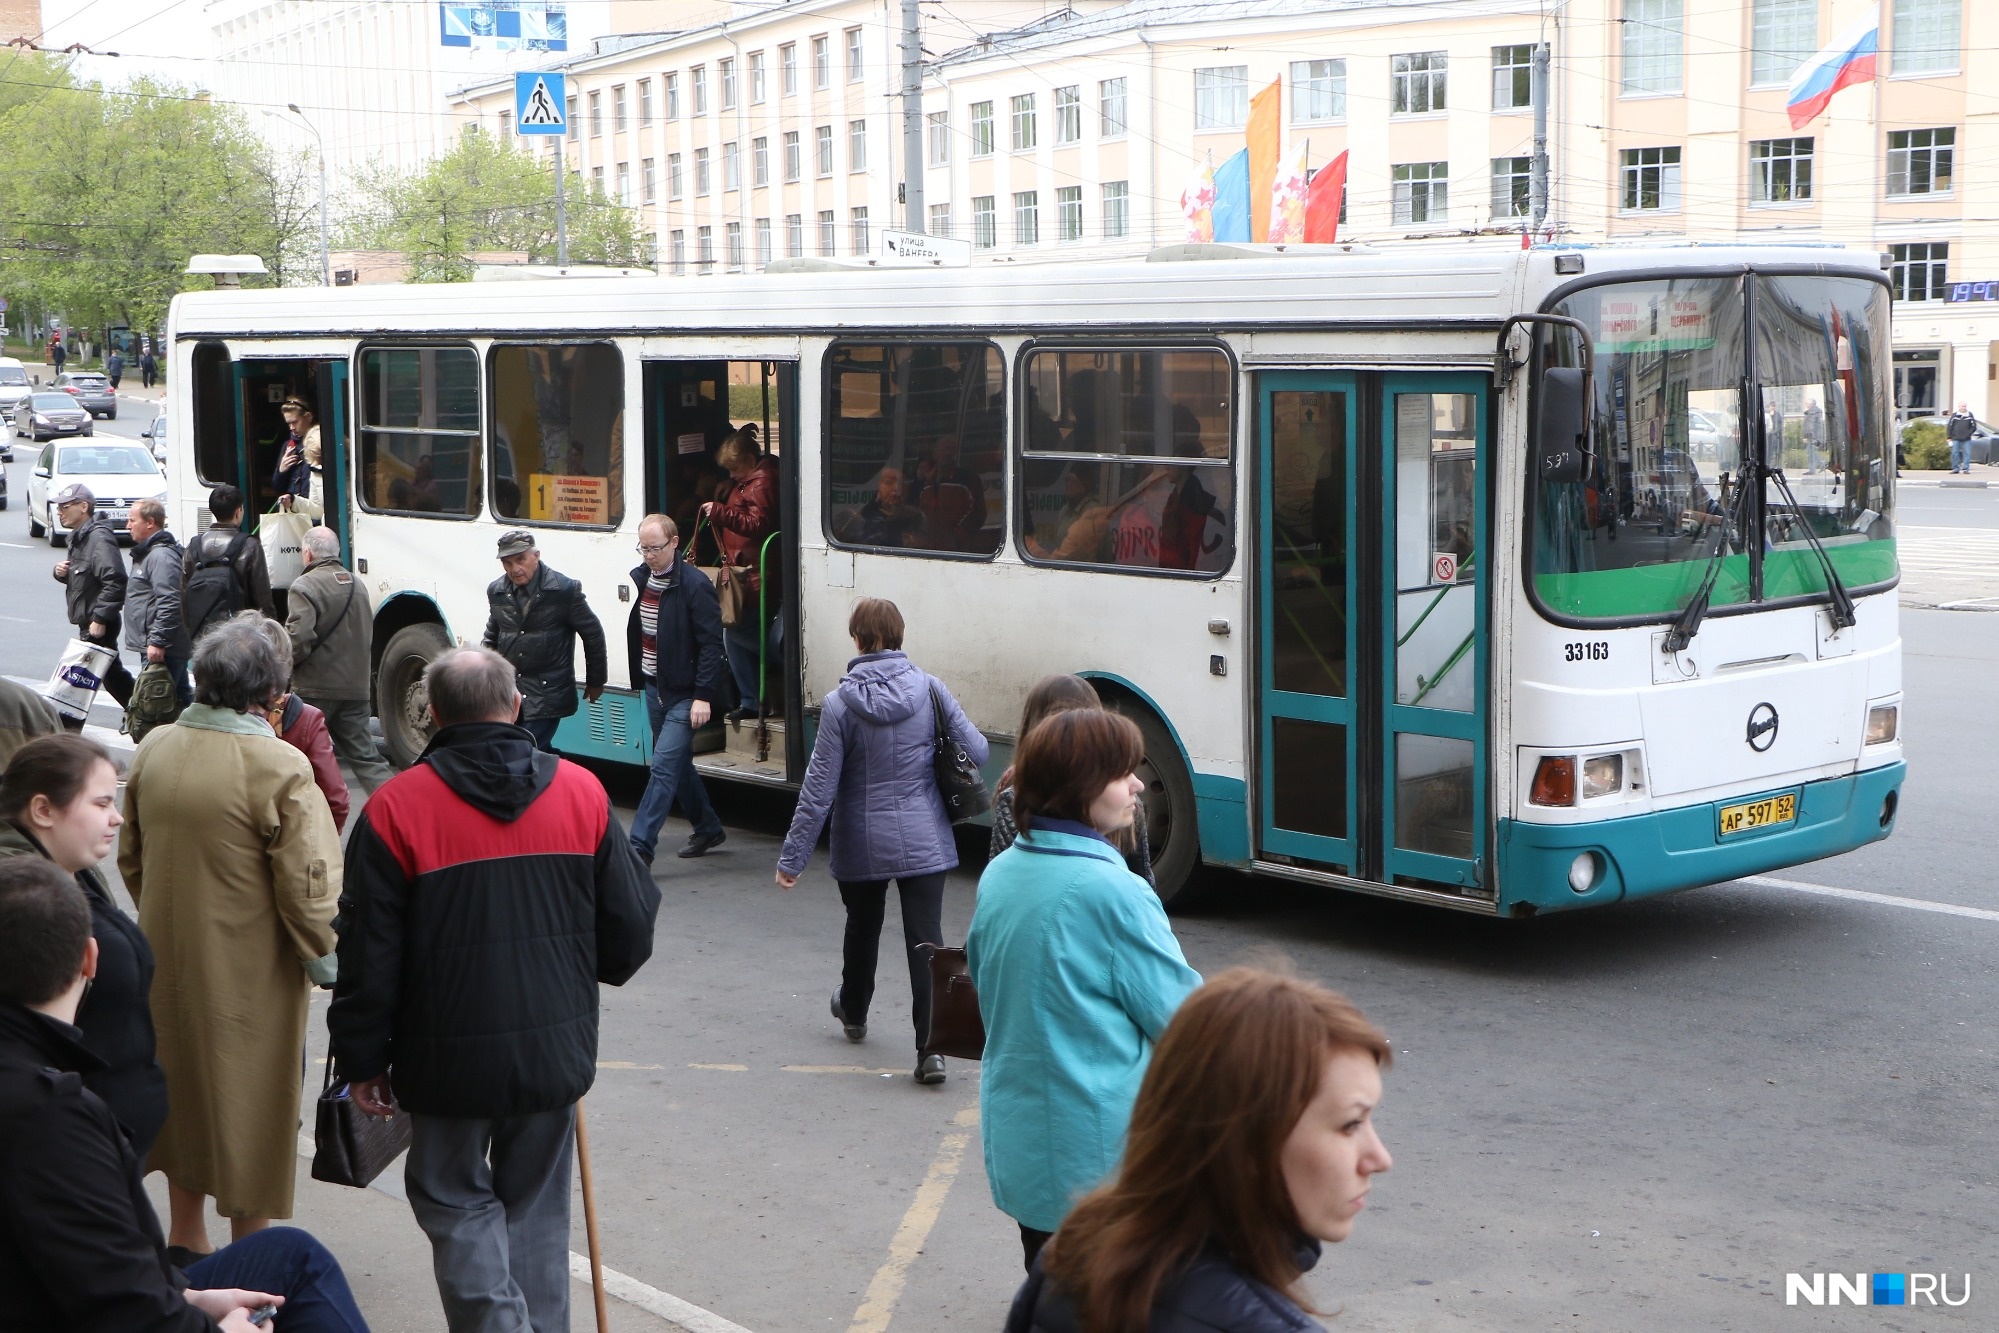 Нижний Новгород готовится предъявить счет области за перевозку льготников общественным транспортом